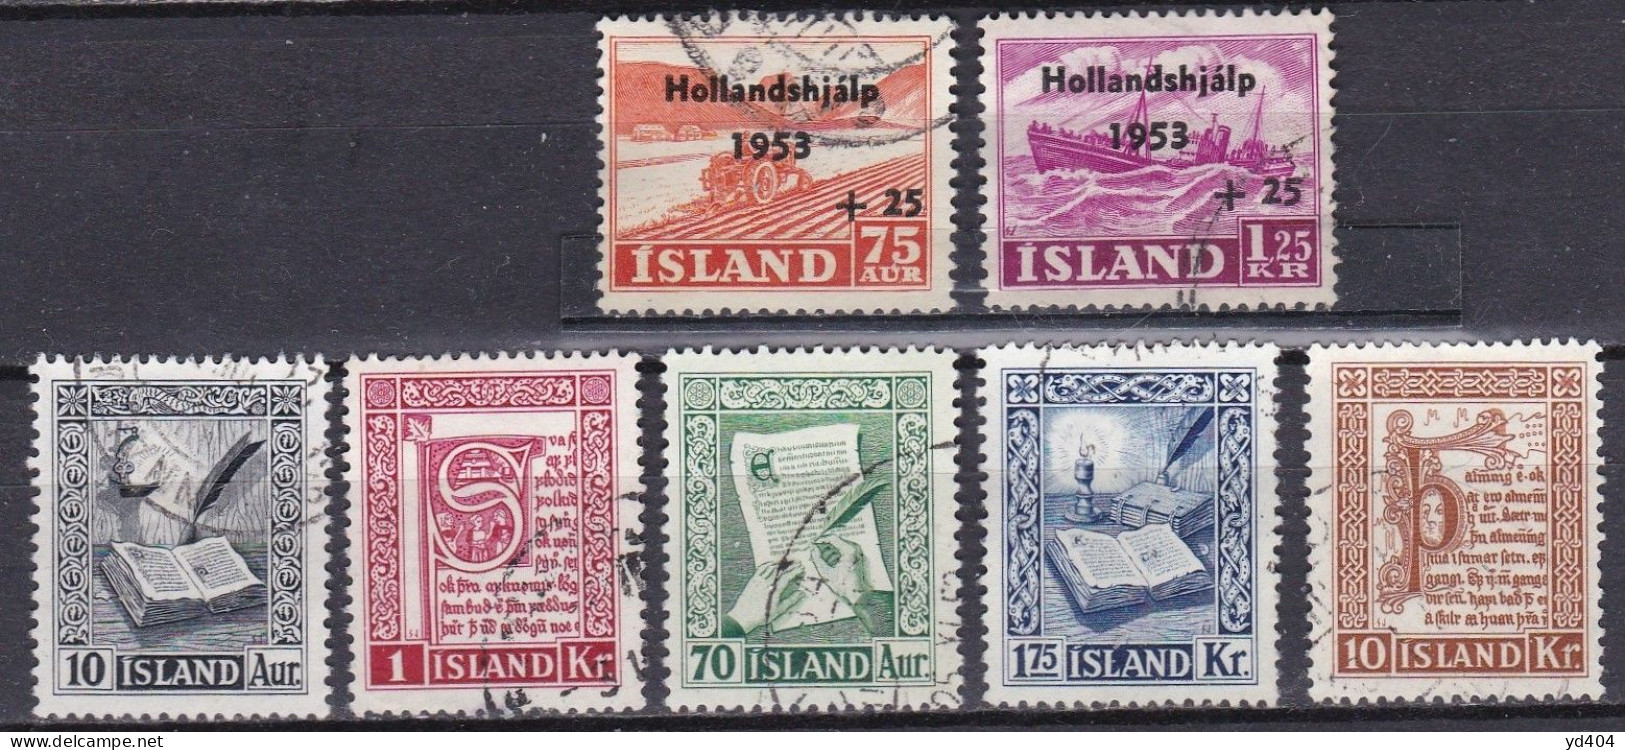 IS058 – ISLANDE – ICELAND – 1953 – FULL YEAR SET – SC # 278/82-B12/3 - USED 13,50 € - Gebruikt